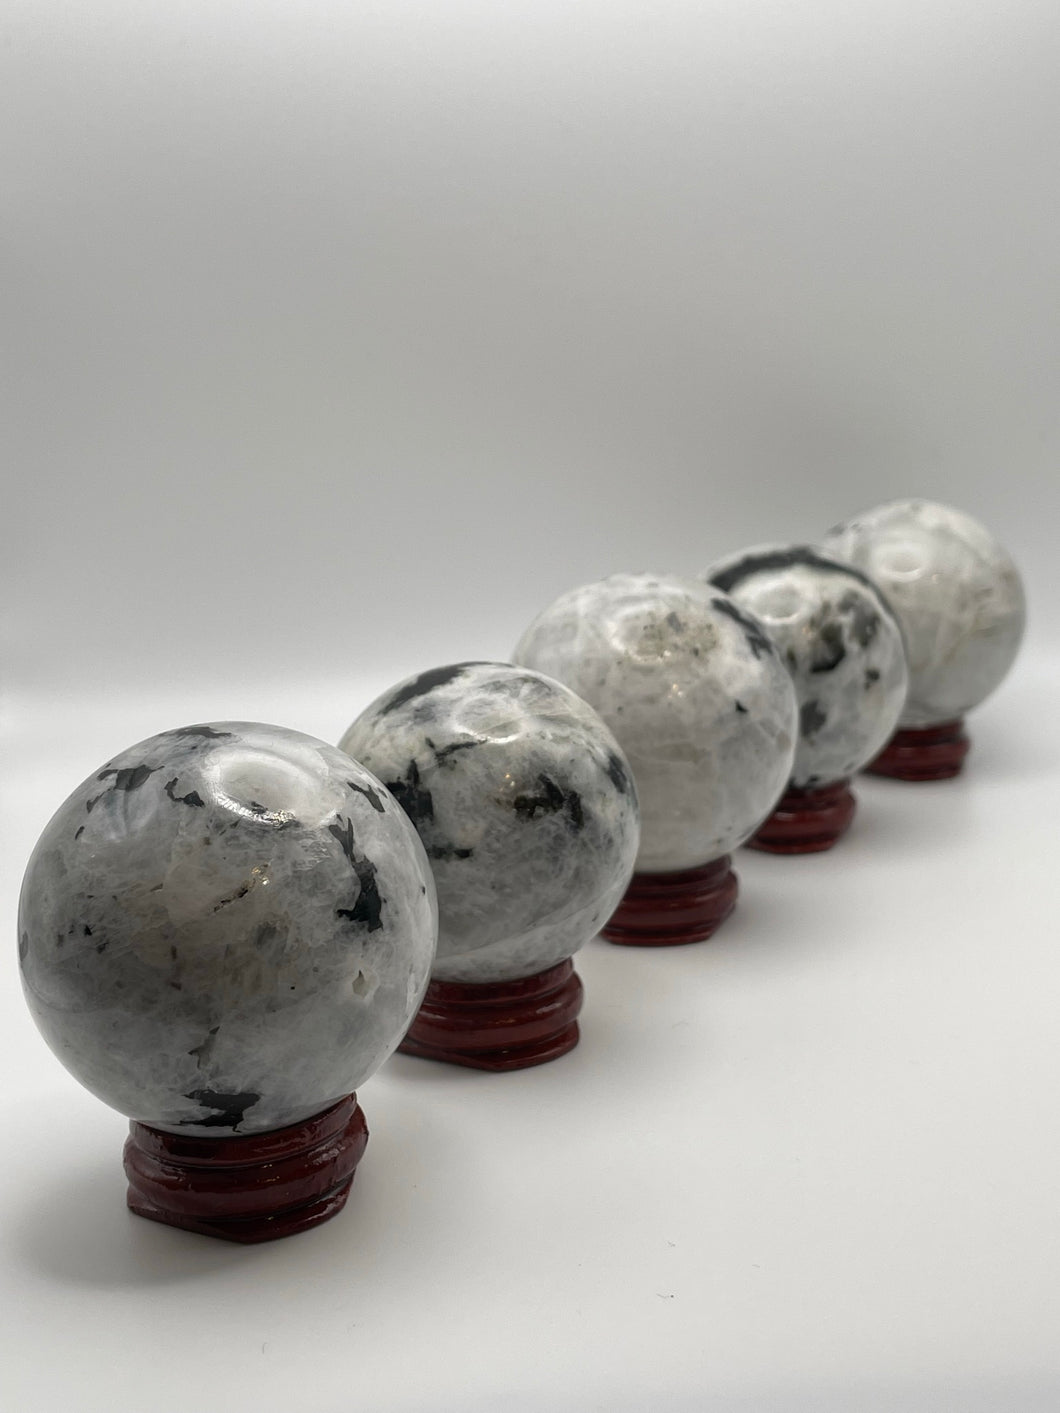 Moonstone spheres